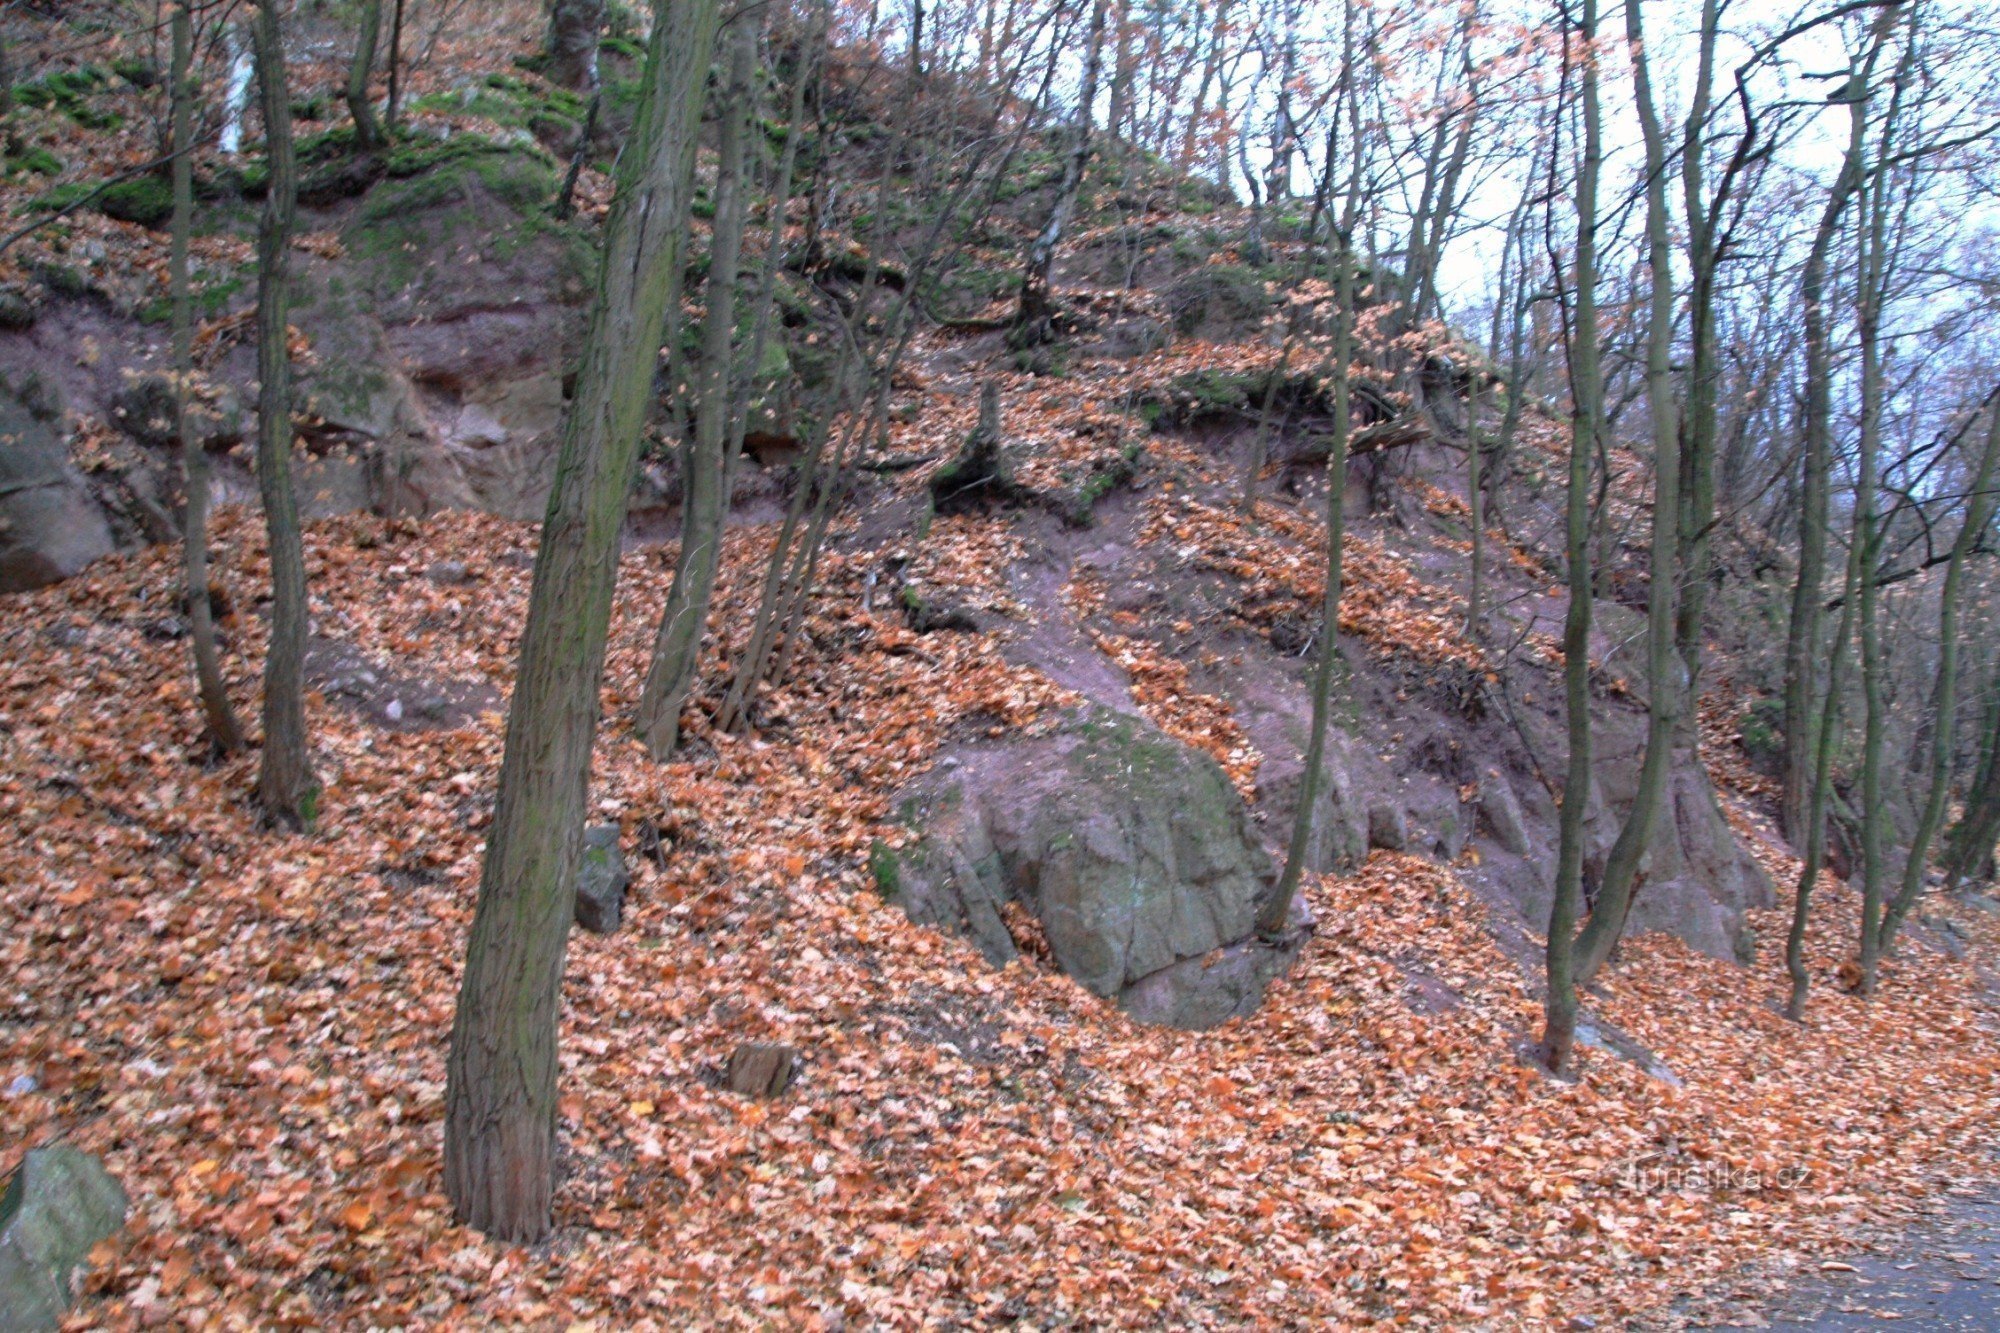 Roci de conglomerat roșu din zona protejată Mahenova straň